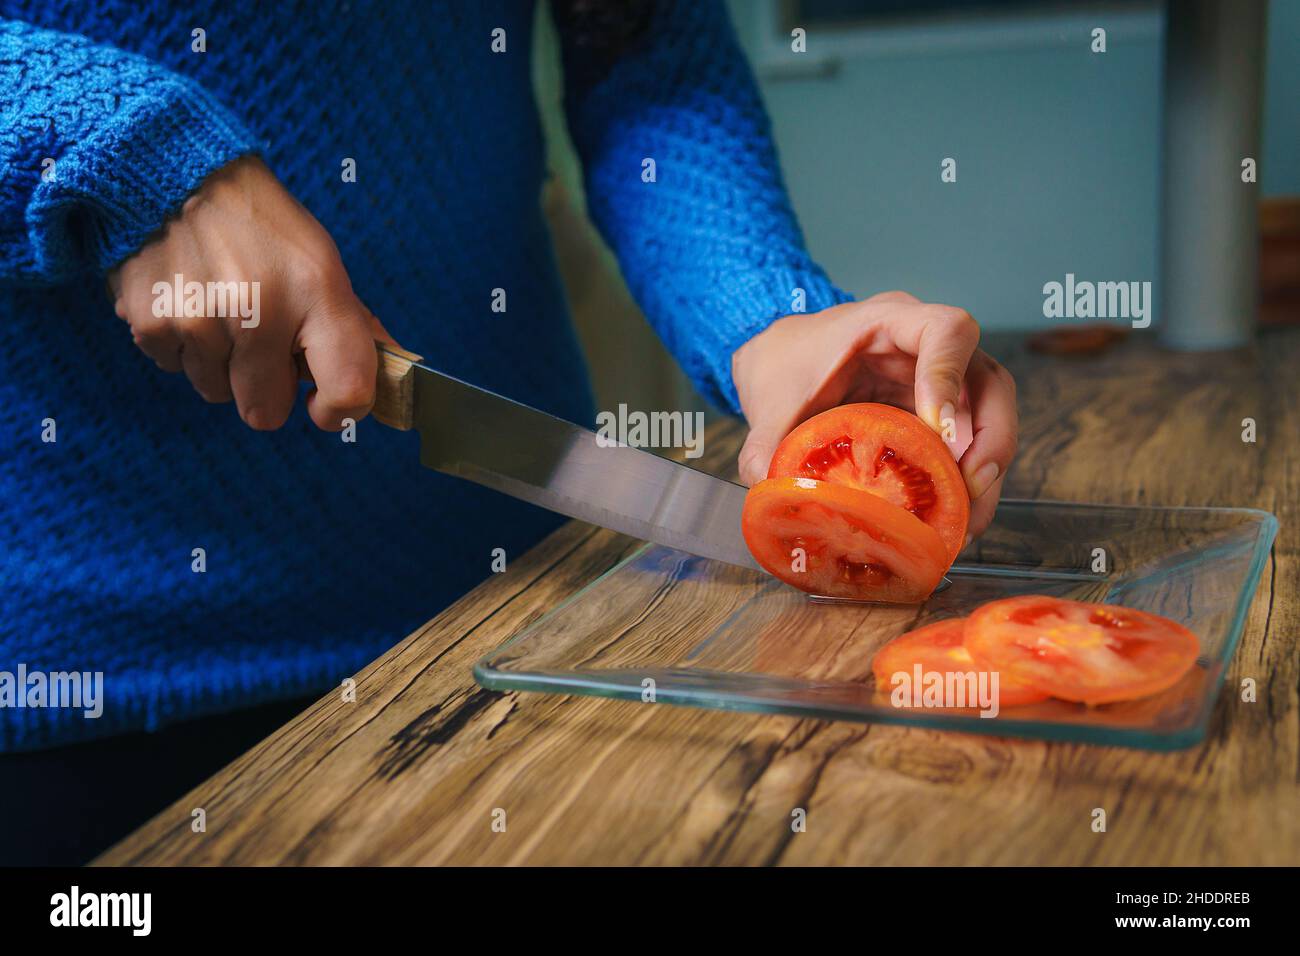 En la mesa hay una tabla de cortar y se puede ver las manos de una mujer cortando cebollas blancas con un cuchillo de chef. Foto de stock